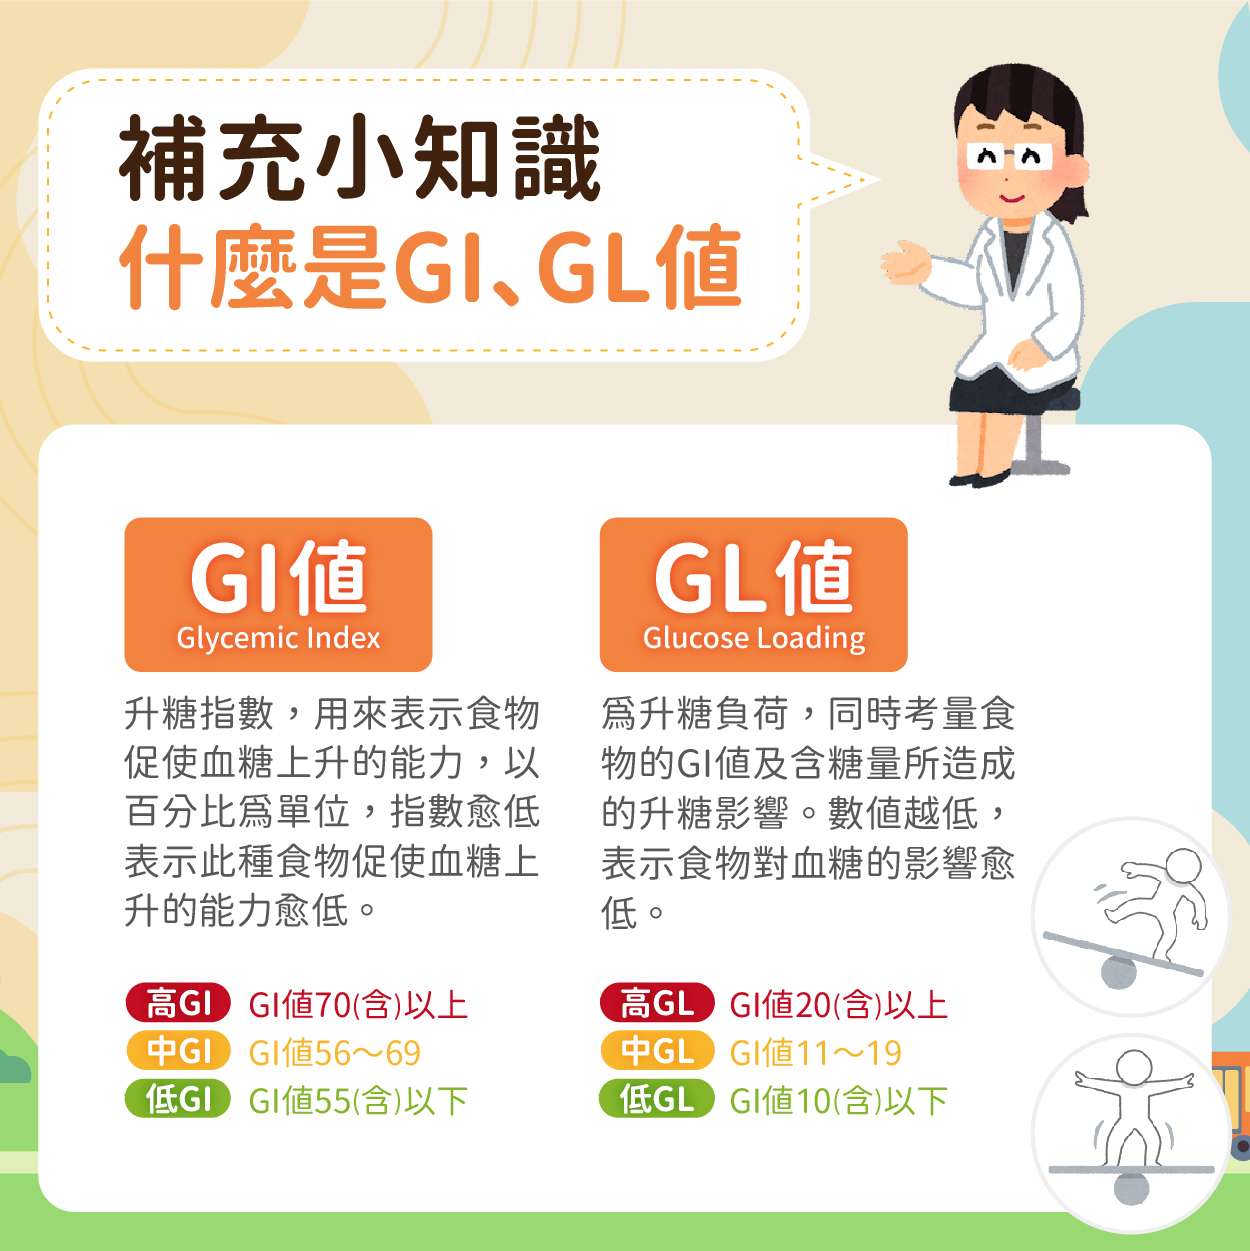 GI值指的是升糖指數，用來表示食物促使血糖上升的能力；而GL值則為升糖負荷，同時考量食物的GI值及含糖量所造成的升糖影響。